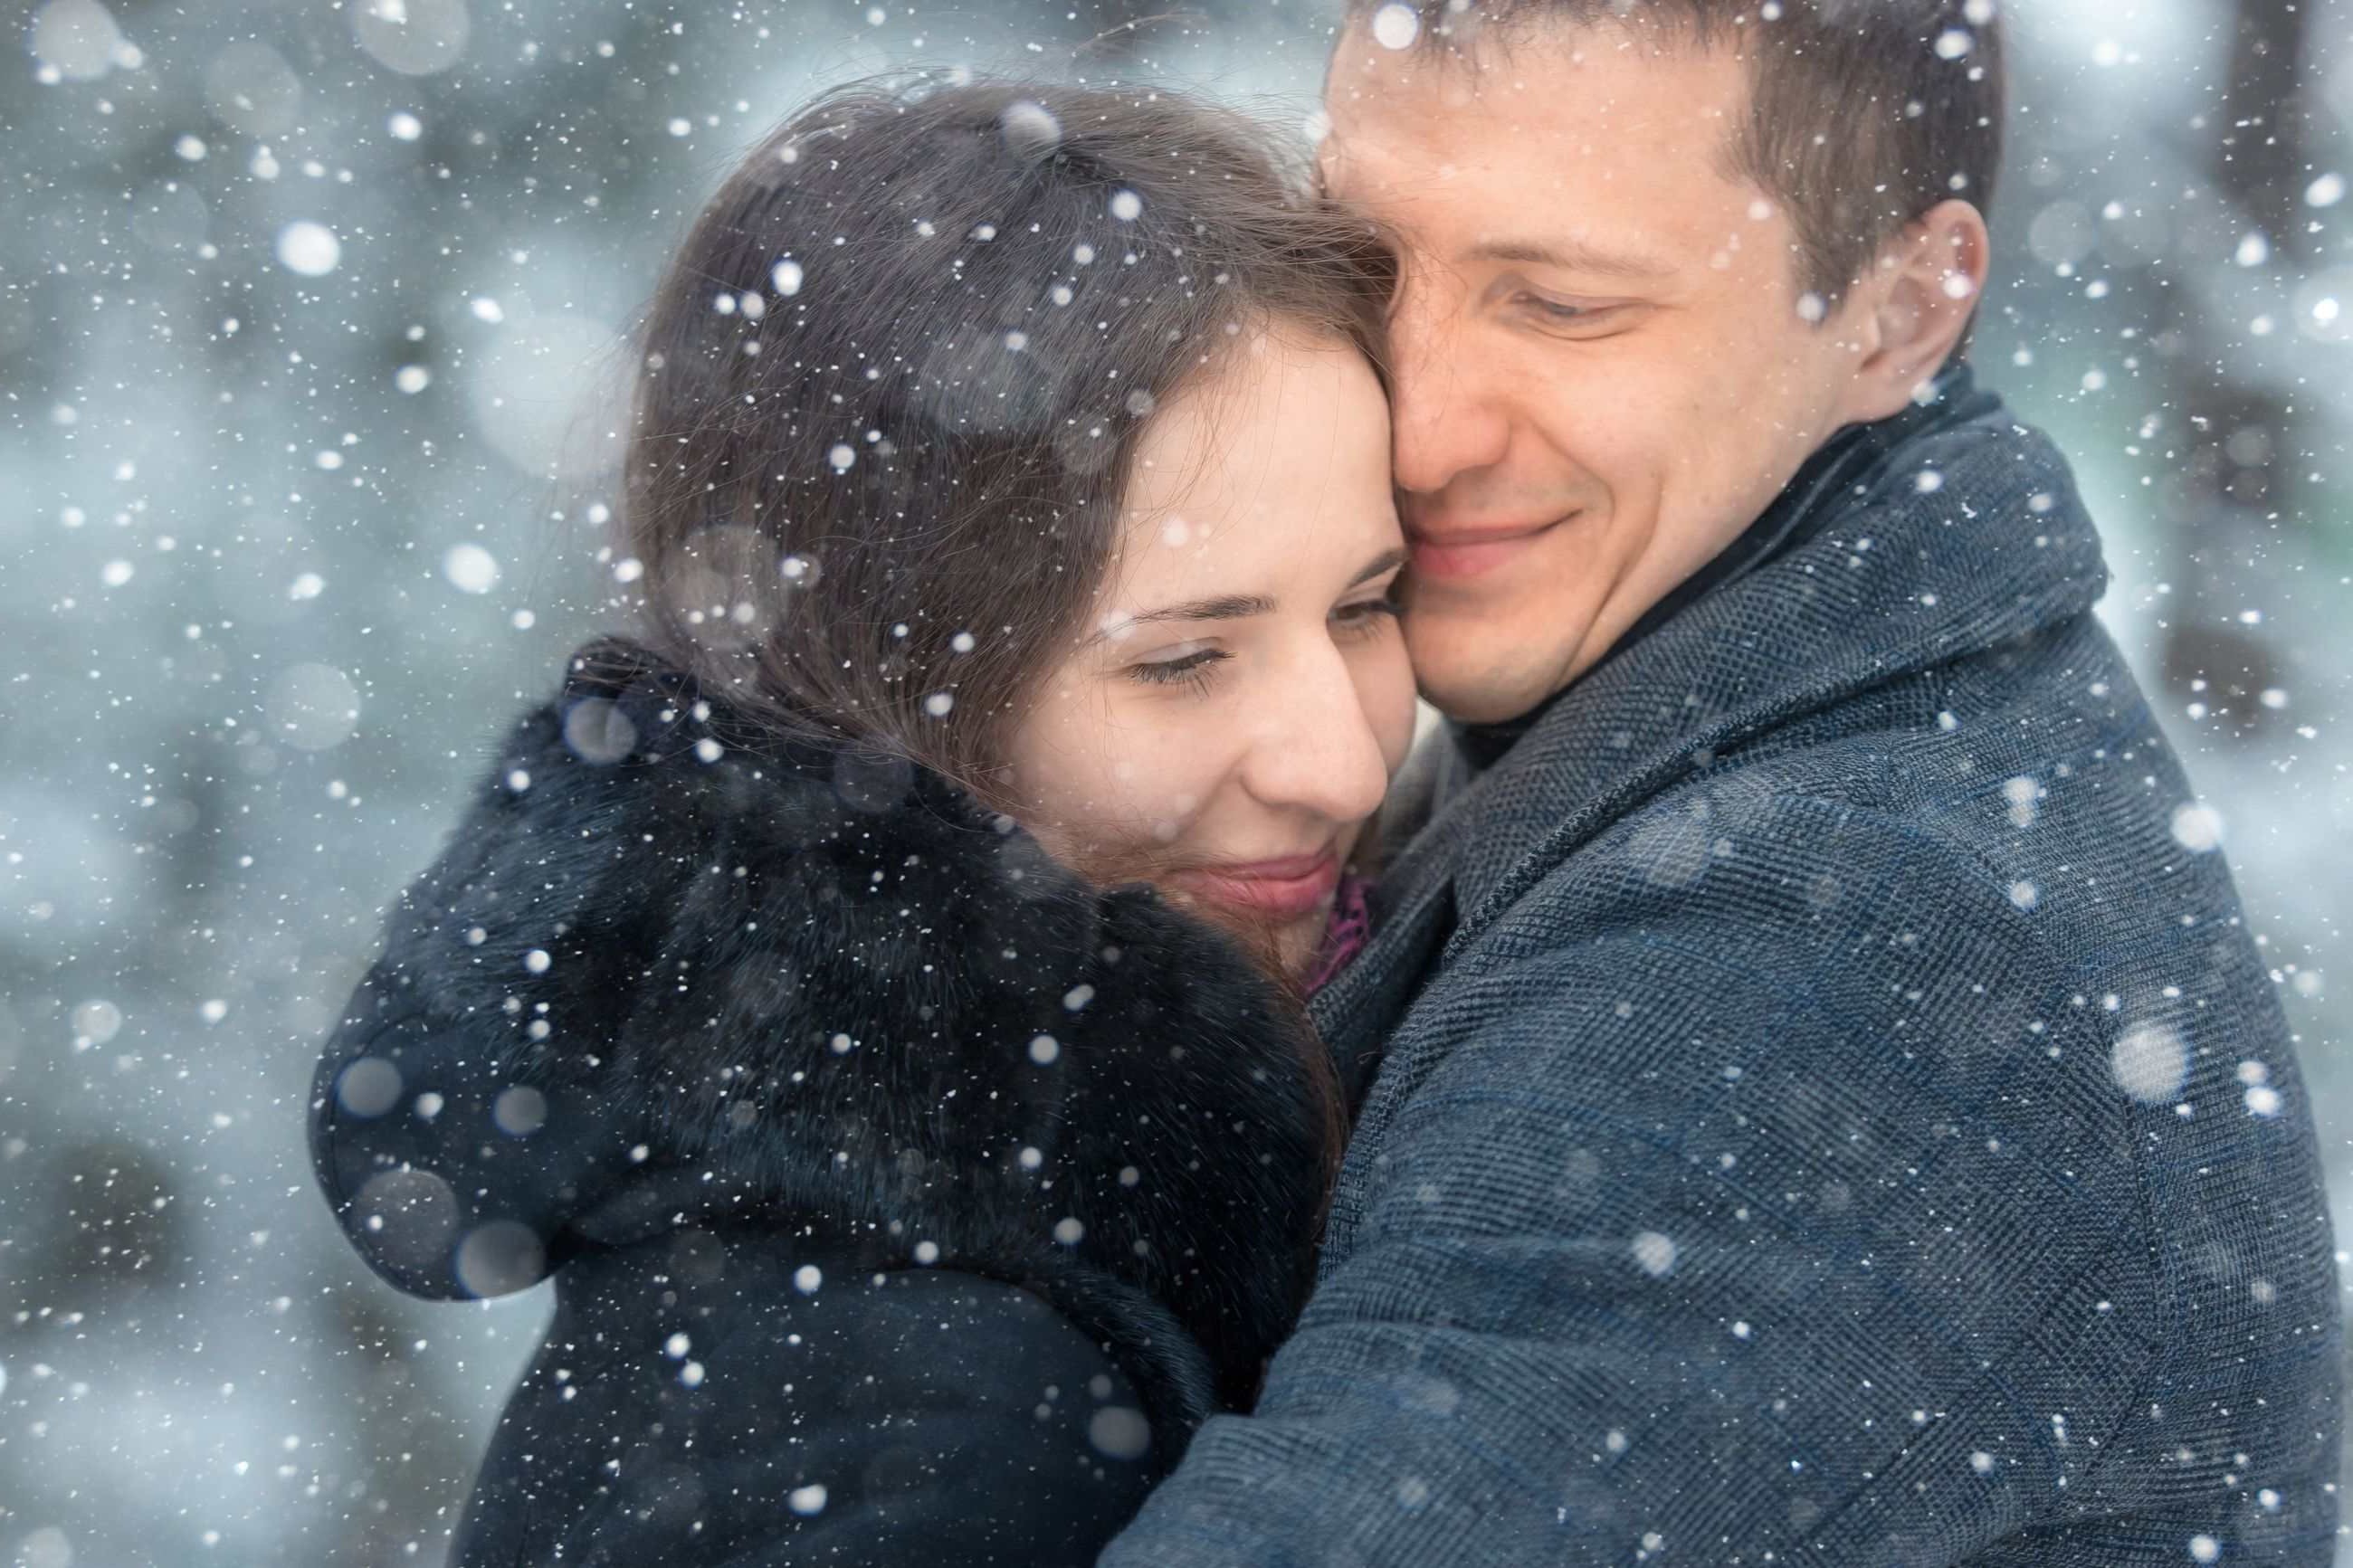 Обнимаю зимой. Влюбленные зимой. Влюбленные в снегу. Встреча влюбленных зимой. Мужчина и женщина зима.